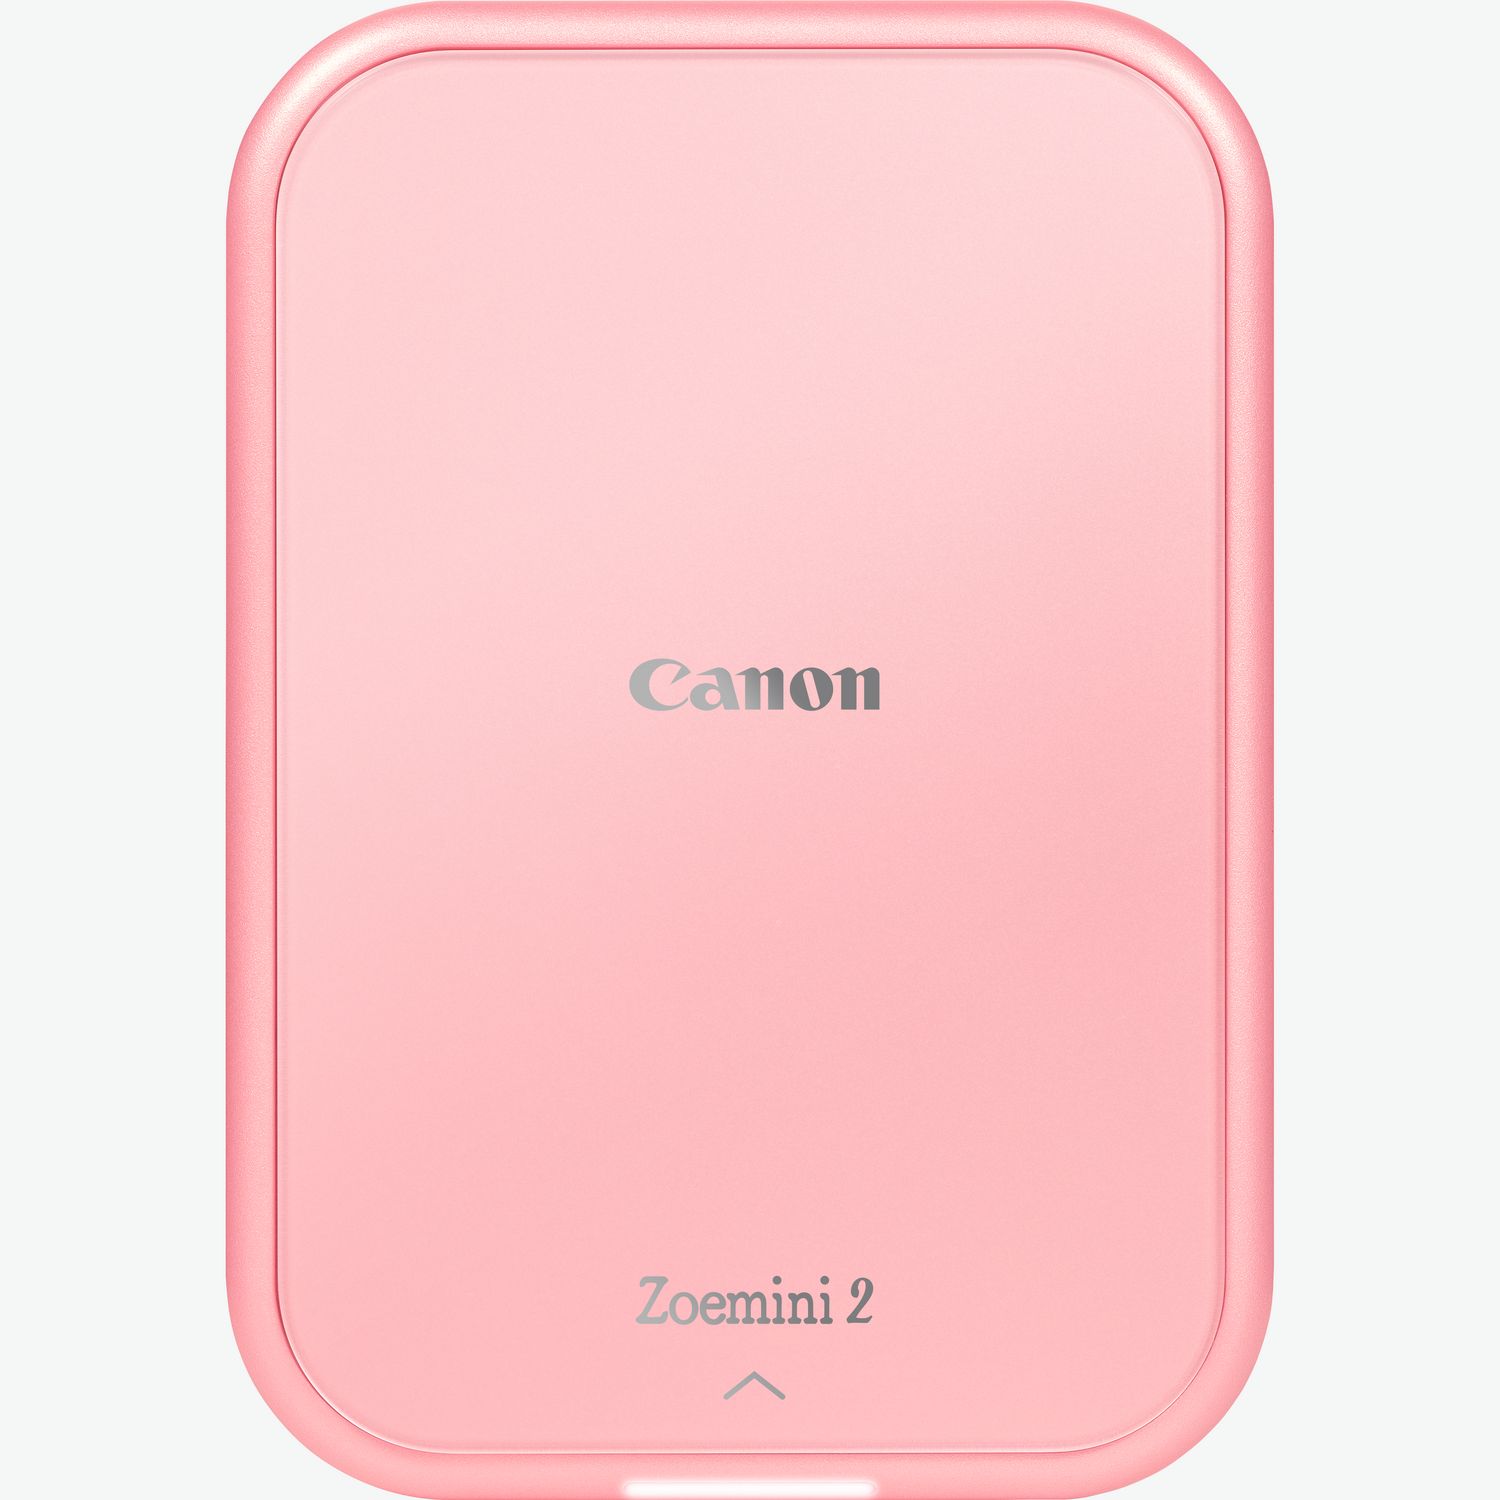 canon zoemini 2 portable colour photo printer rose gold 5452C003